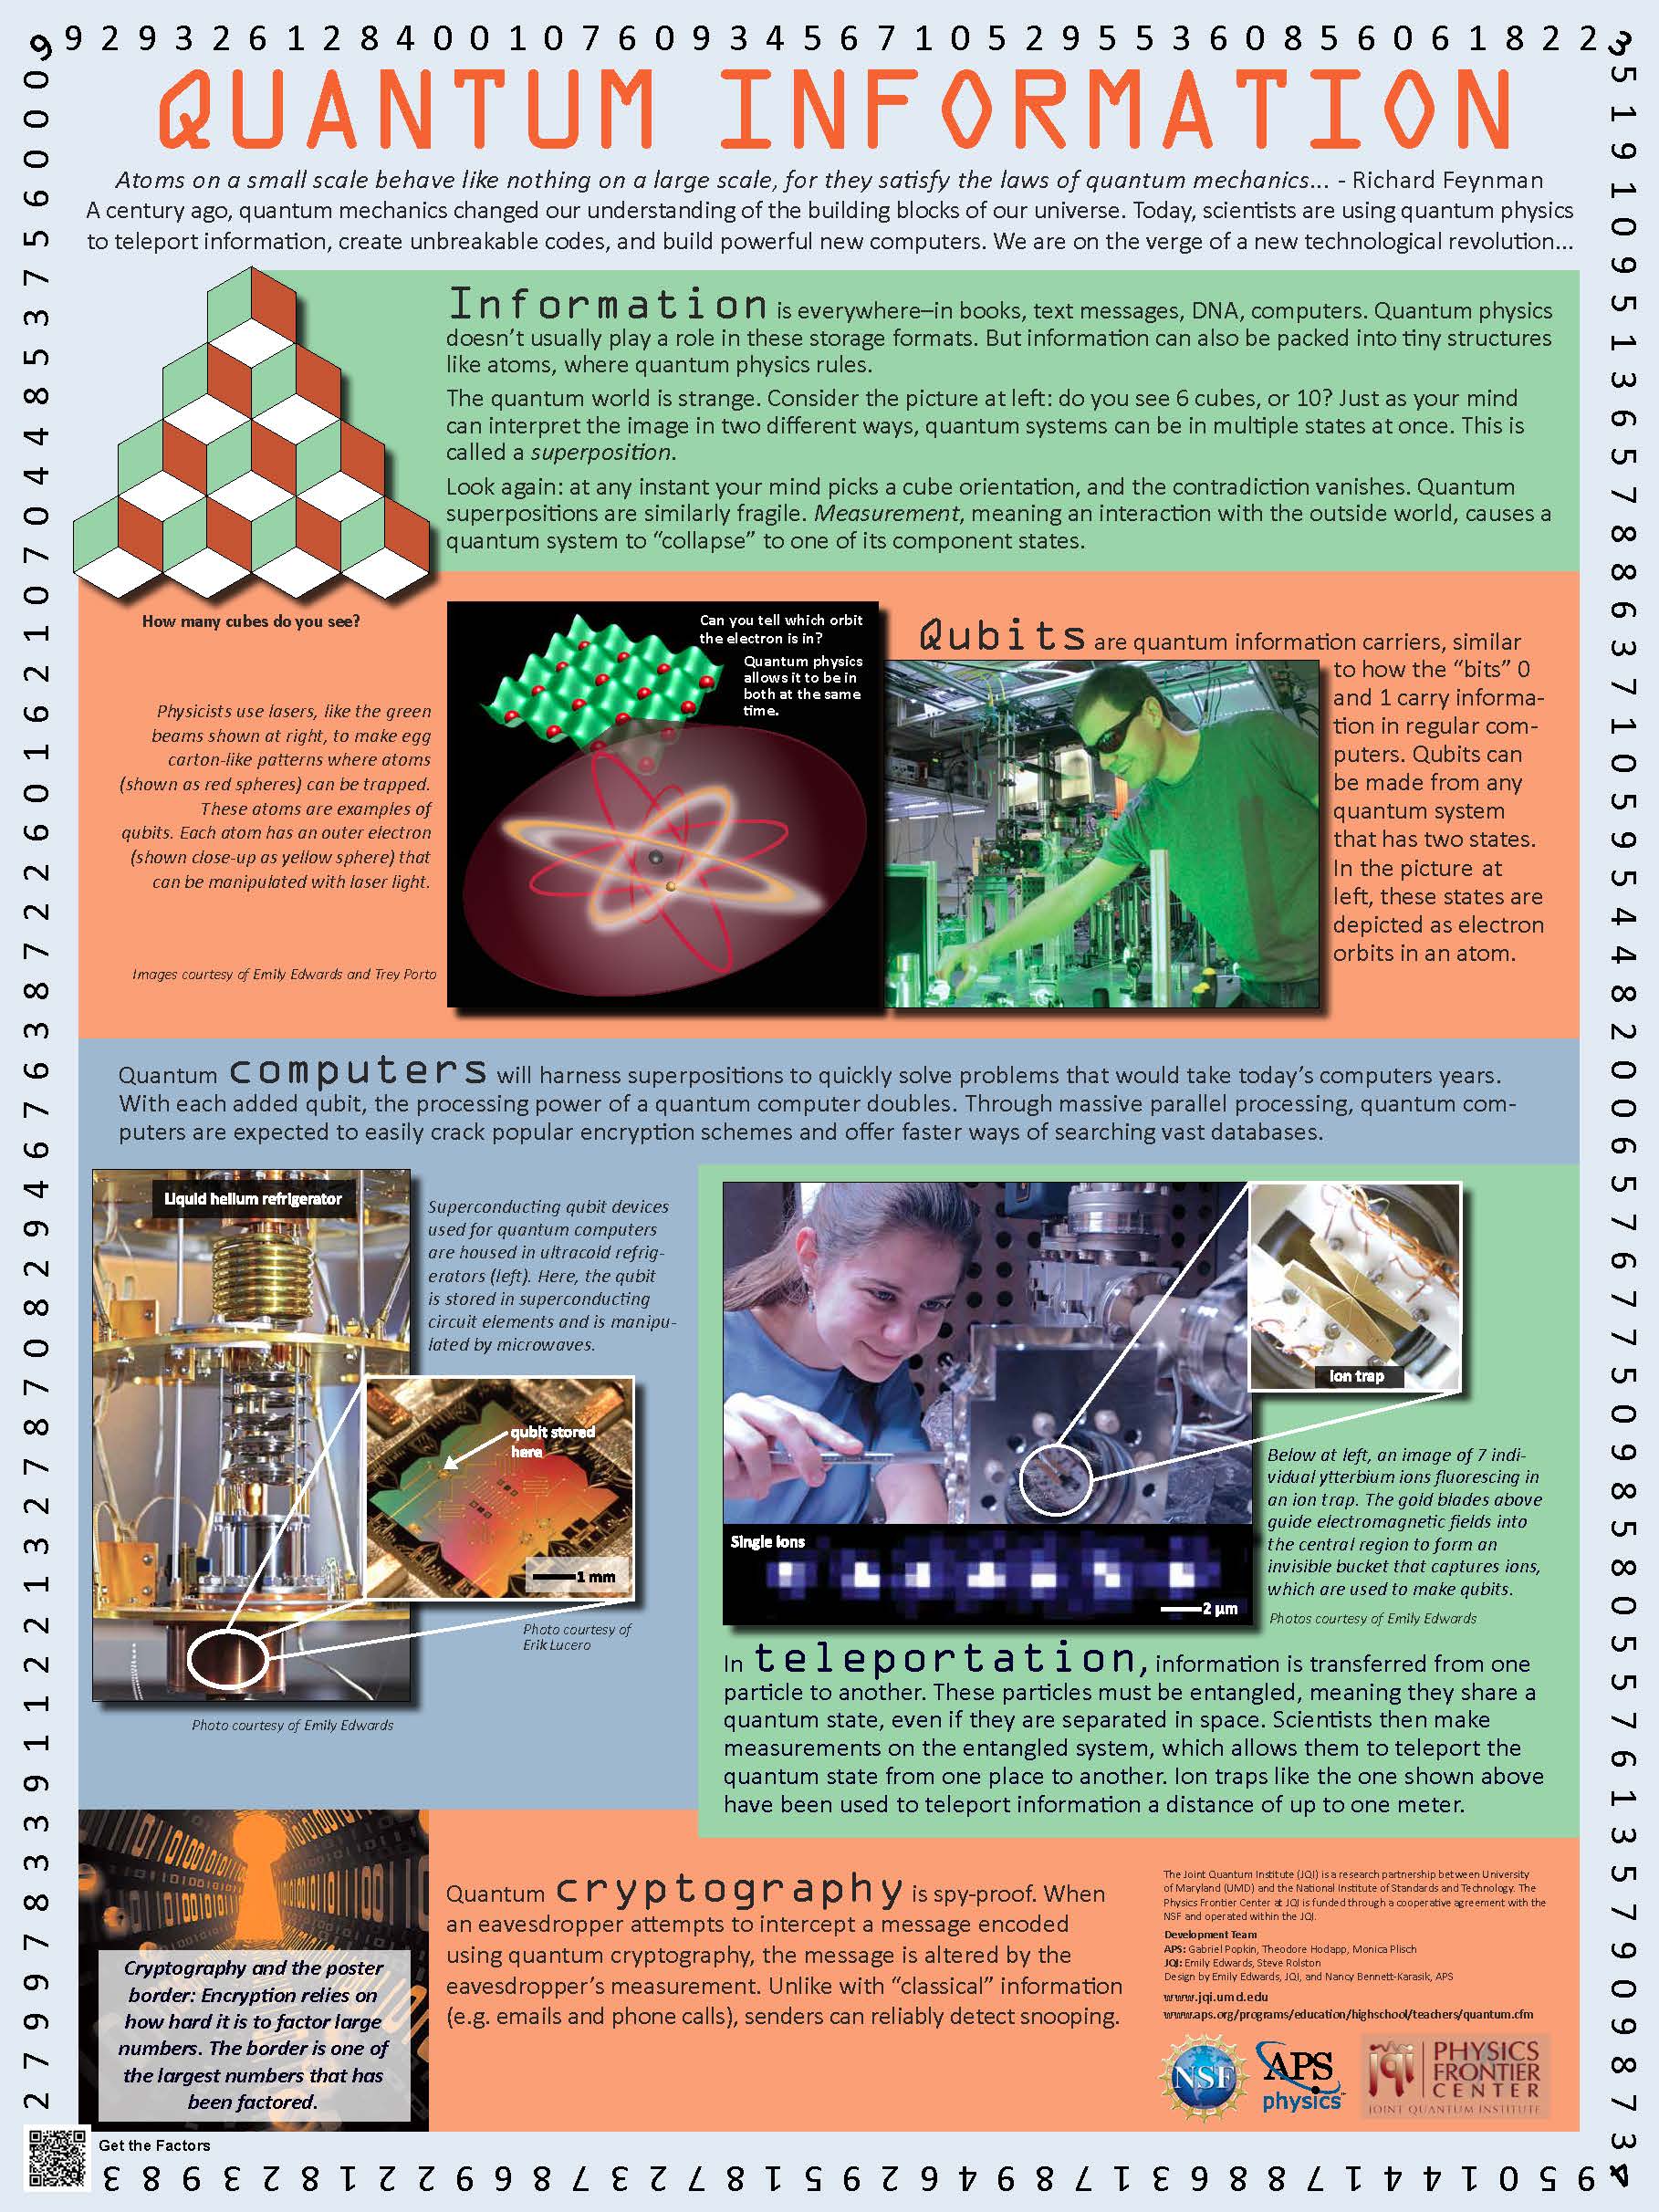 Quantum Information poster